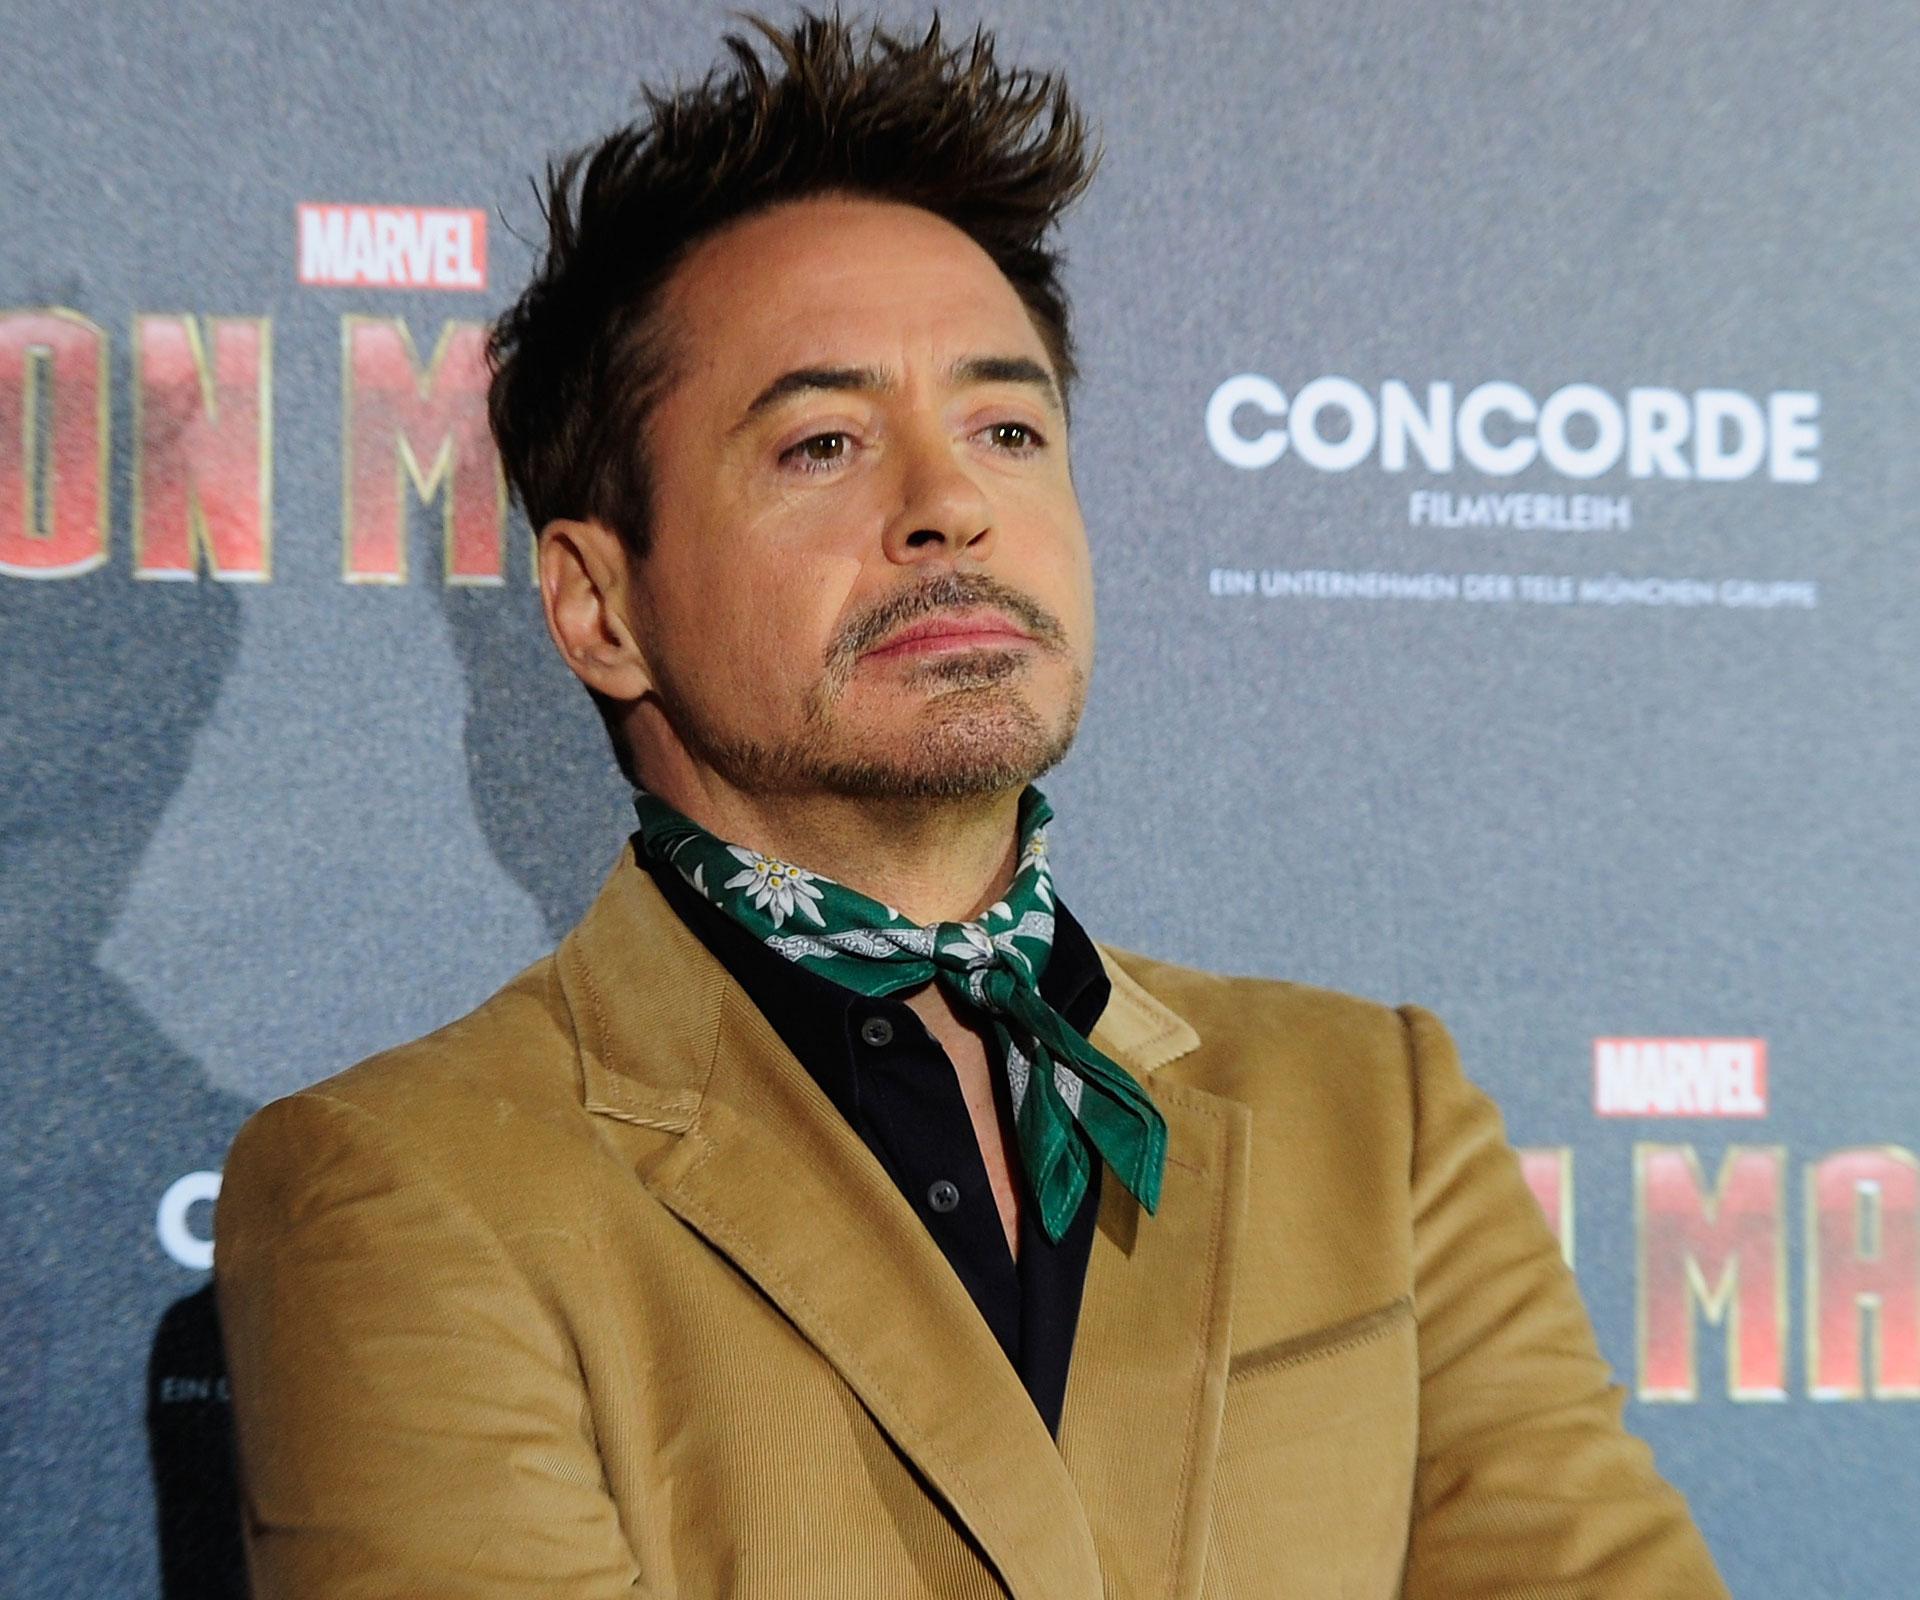 Robert Downey Jr walks out of interview